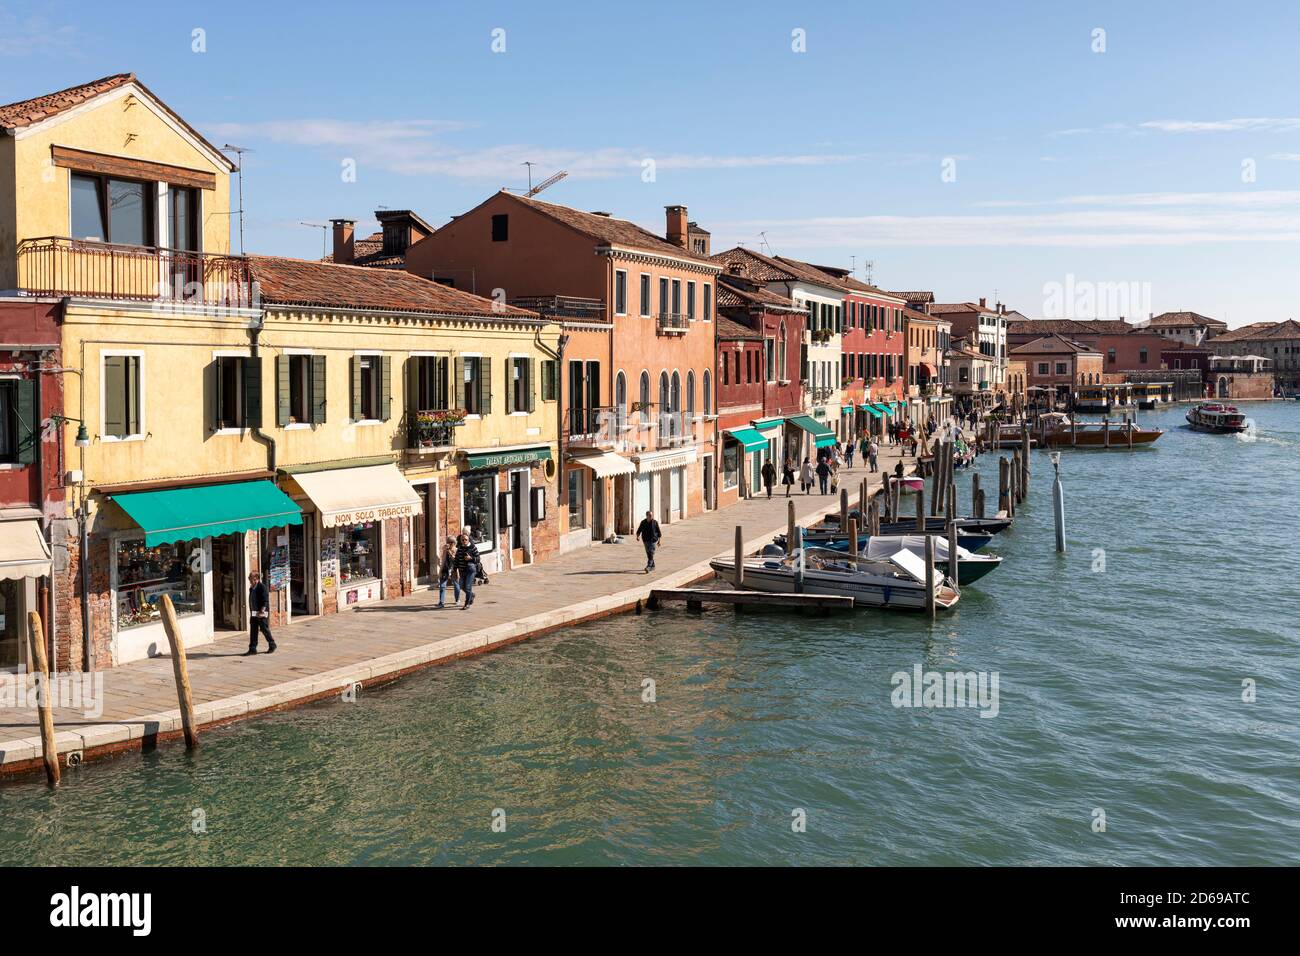 L'île vénitienne Lagoon de Murano - le Rio dei Vetrai avec des bâtiments historiques pittoresques et des bateaux. Murano, Venise, Italie. 2020 Banque D'Images